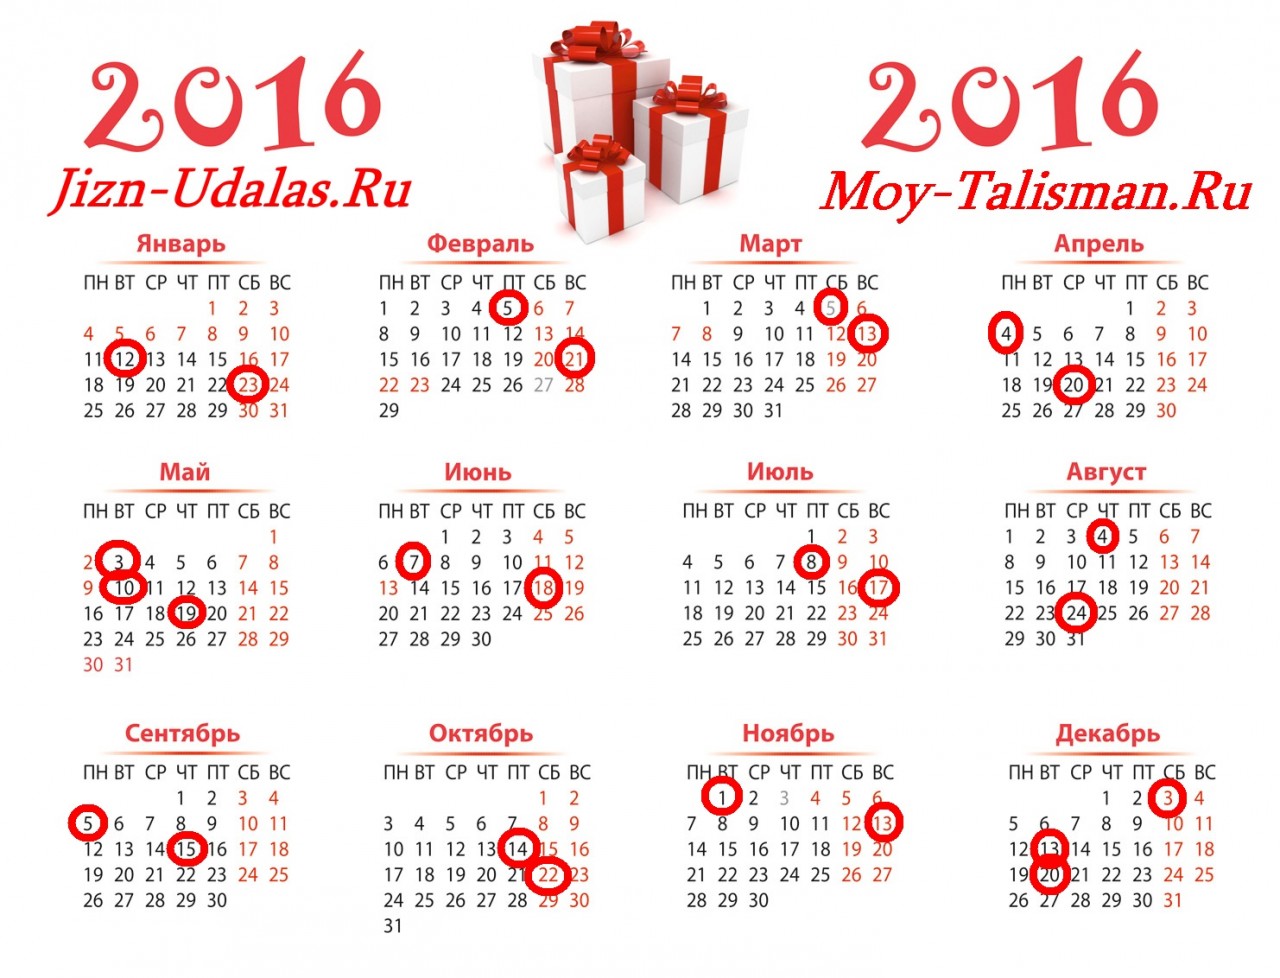 Даты для денежной стрижки на 2016 год.